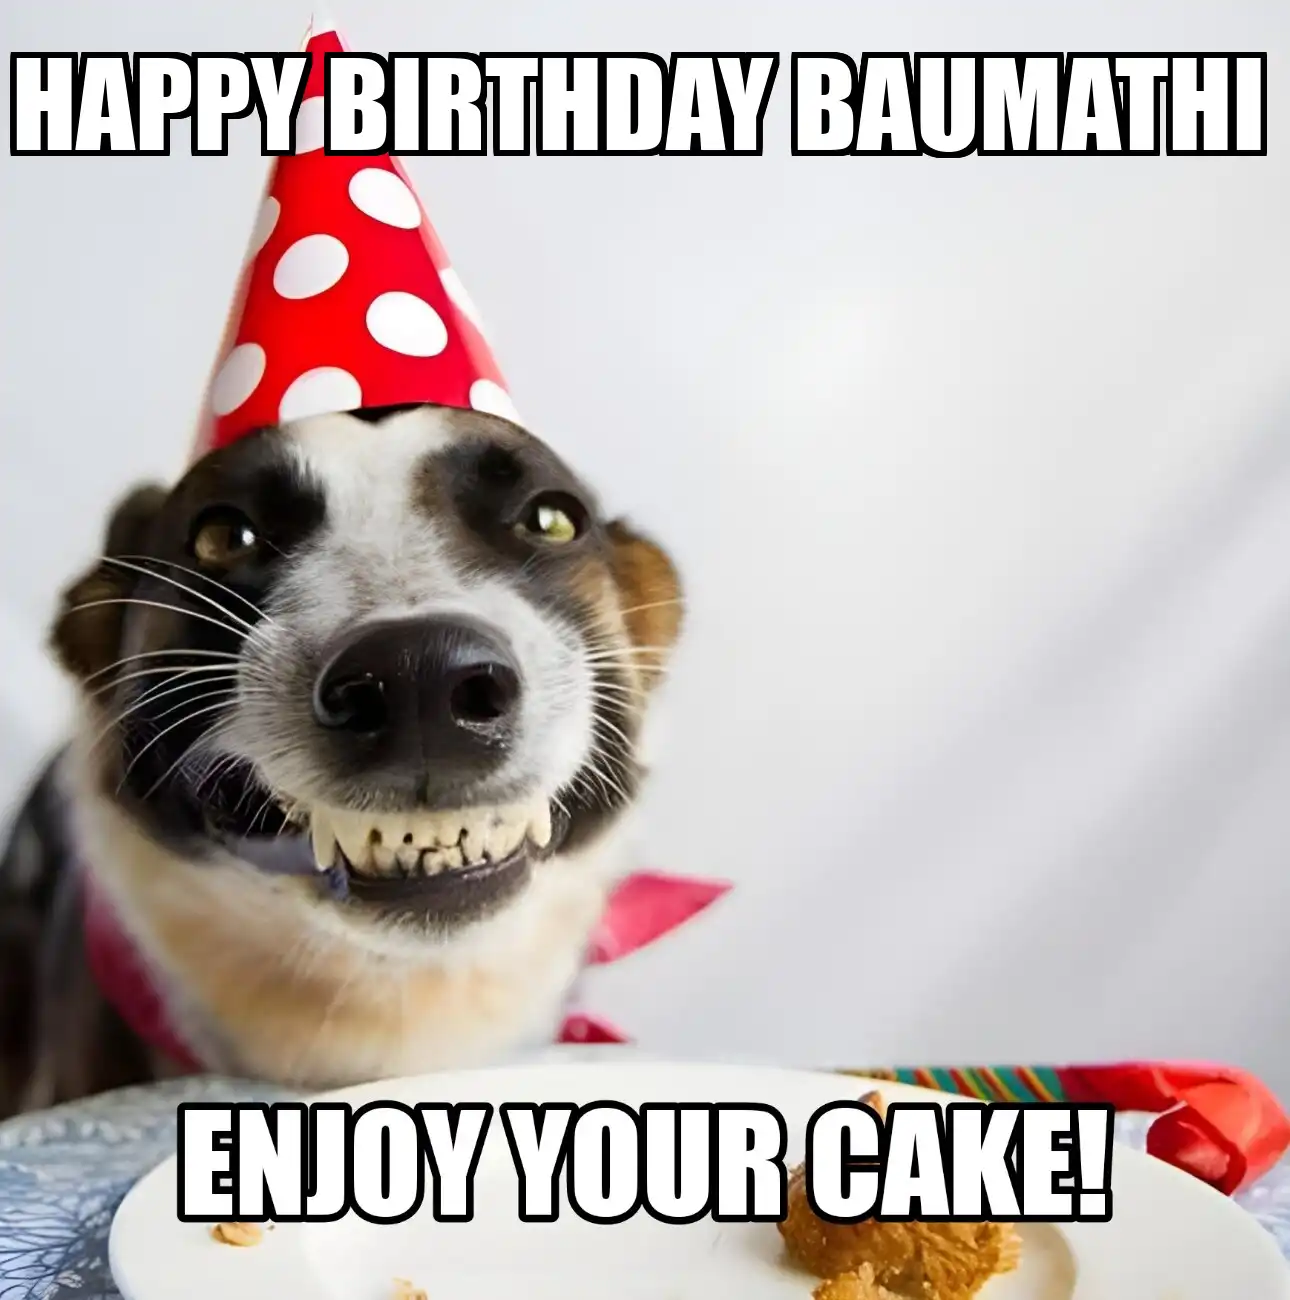 Happy Birthday Baumathi Enjoy Your Cake Dog Meme